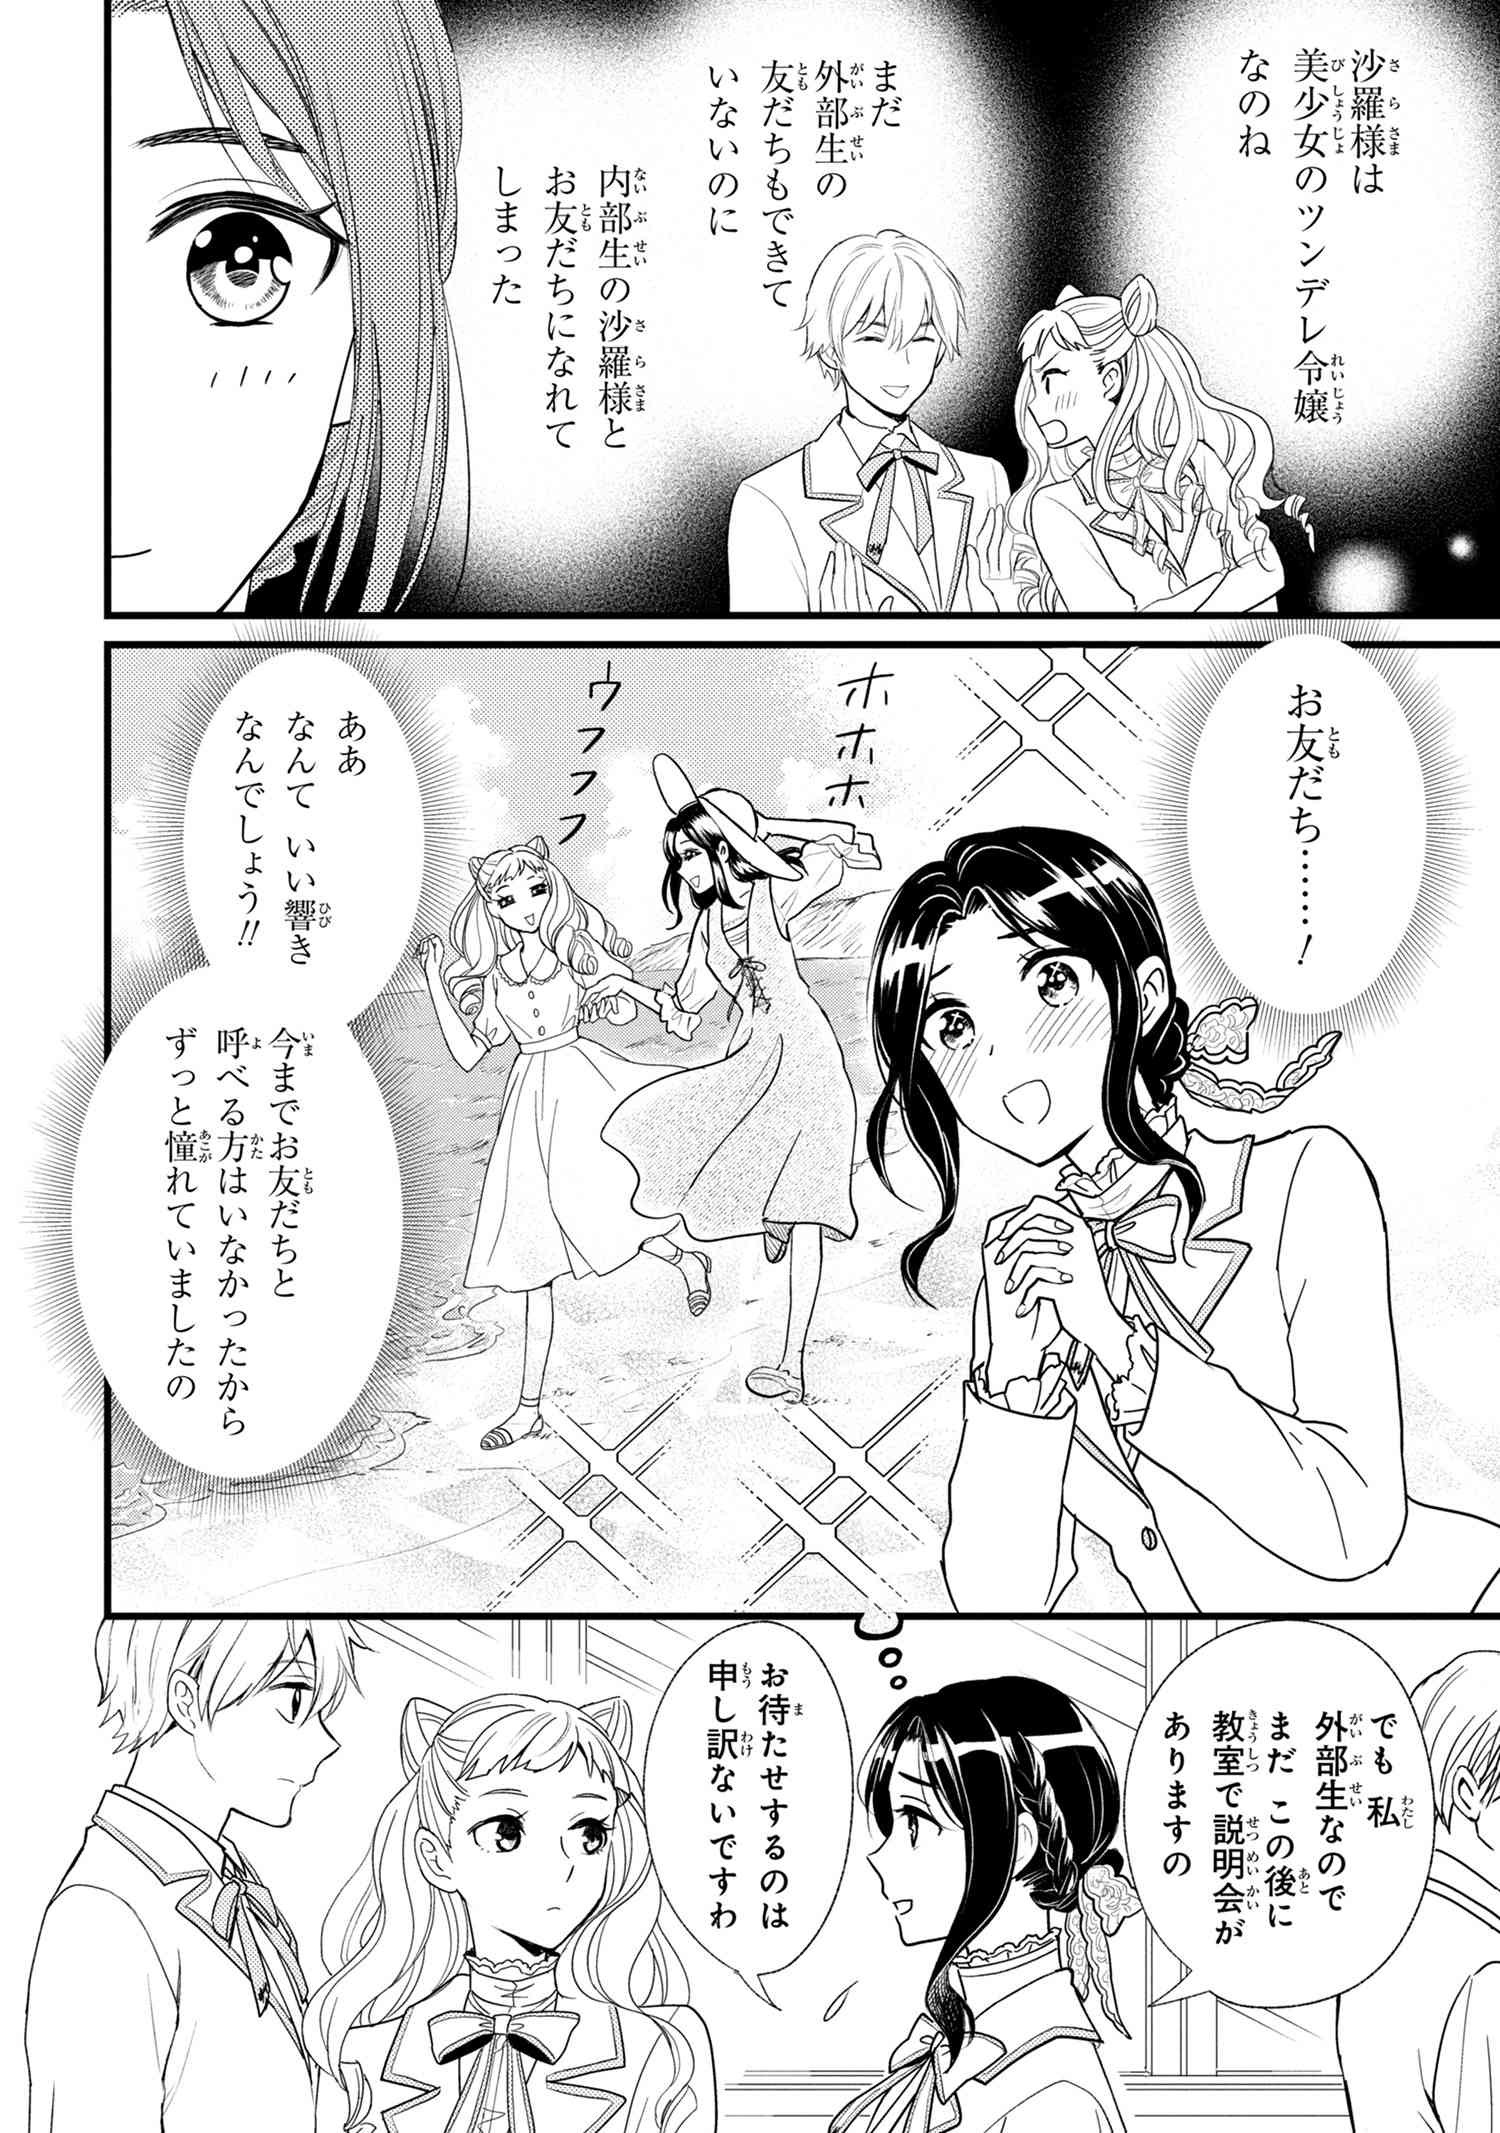 Reiko no Fuugi Akuyaku Reijou to Yobarete imasu ga, tada no Binbou Musume desu - Chapter 2-1 - Page 4